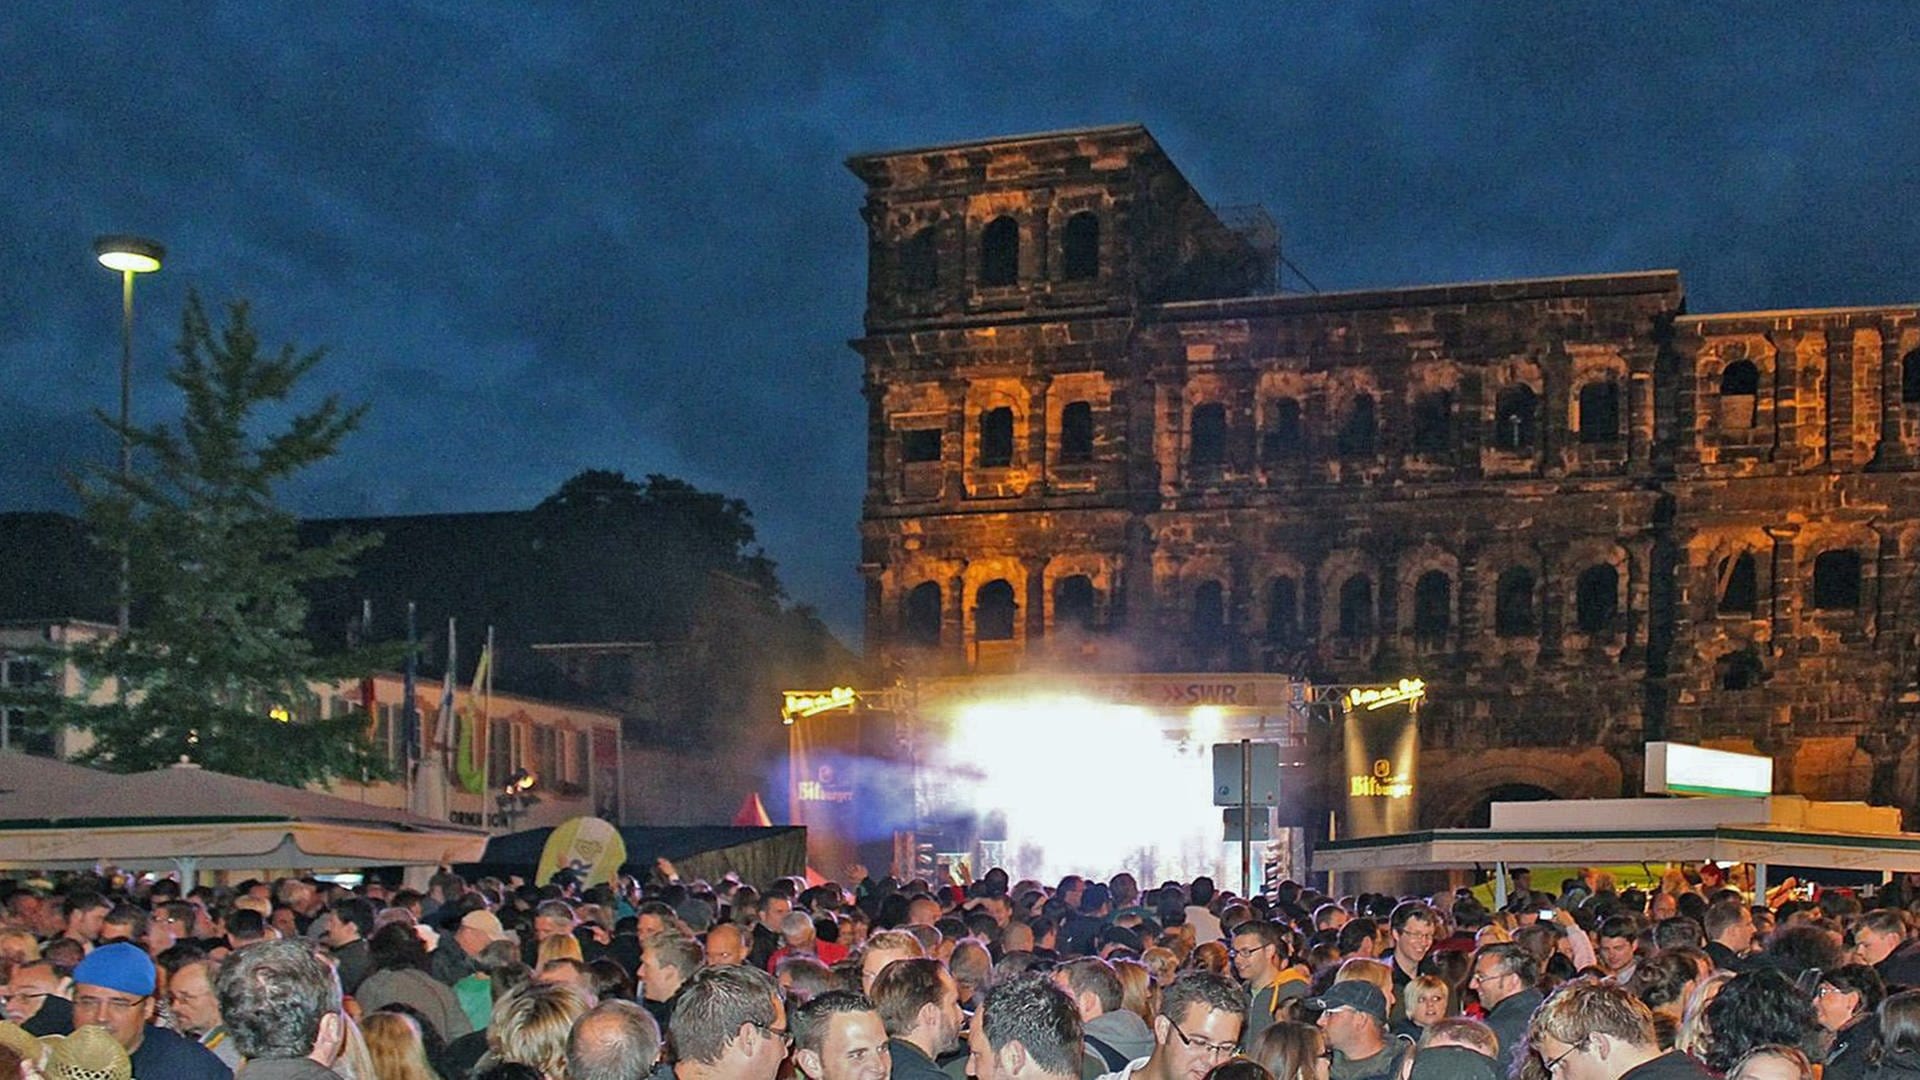 Triers größte Innenstadt-Party startet